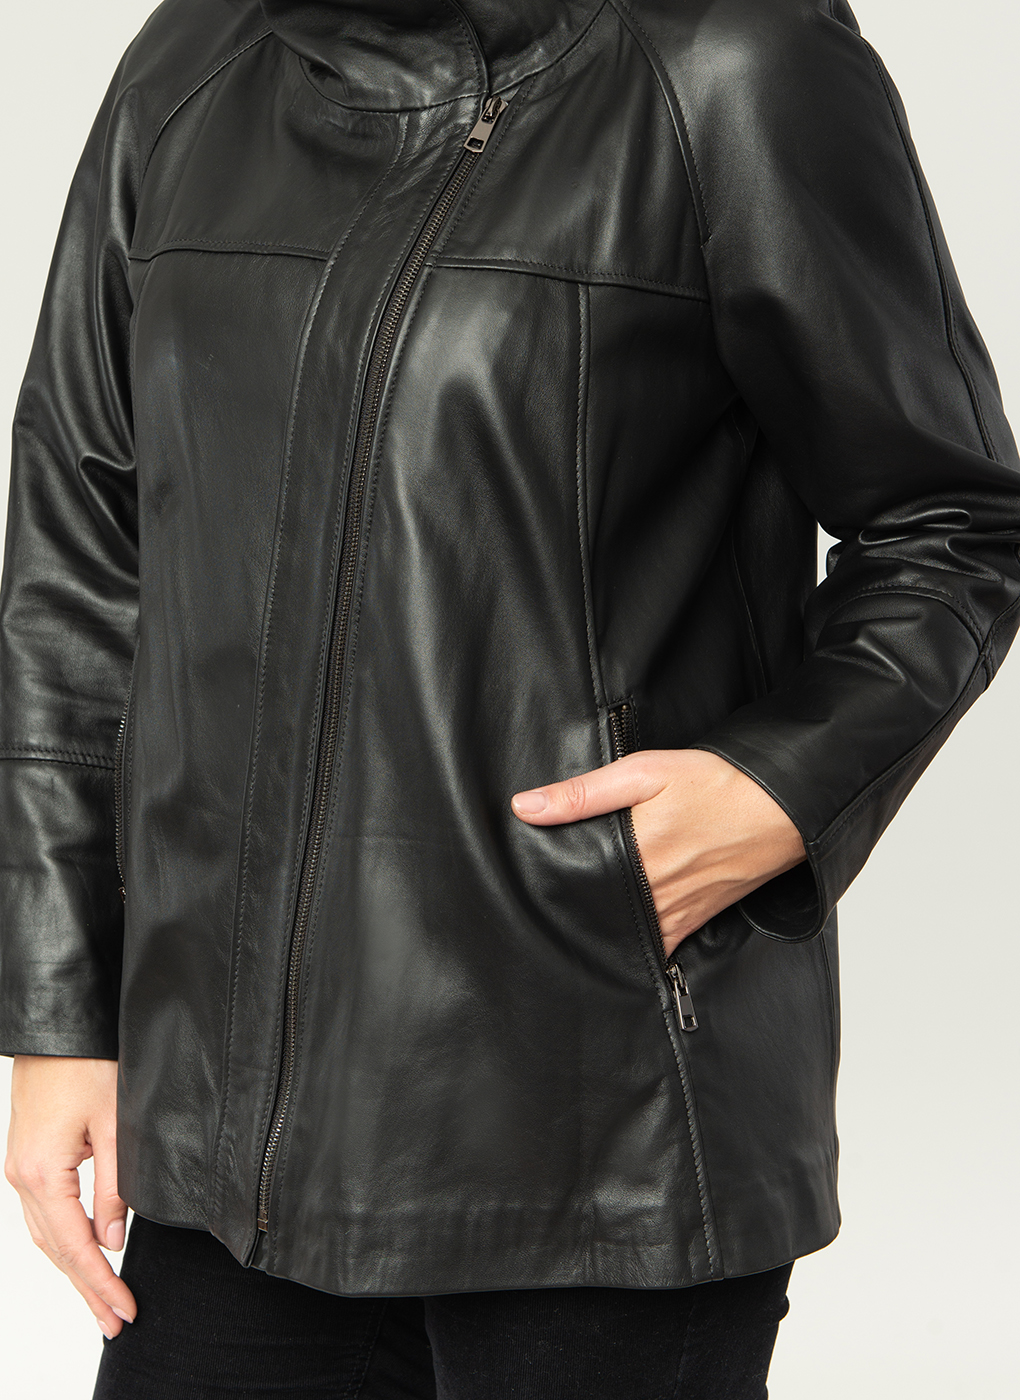 Кожаная куртка женская Каляев 1611019 черная 48 RU